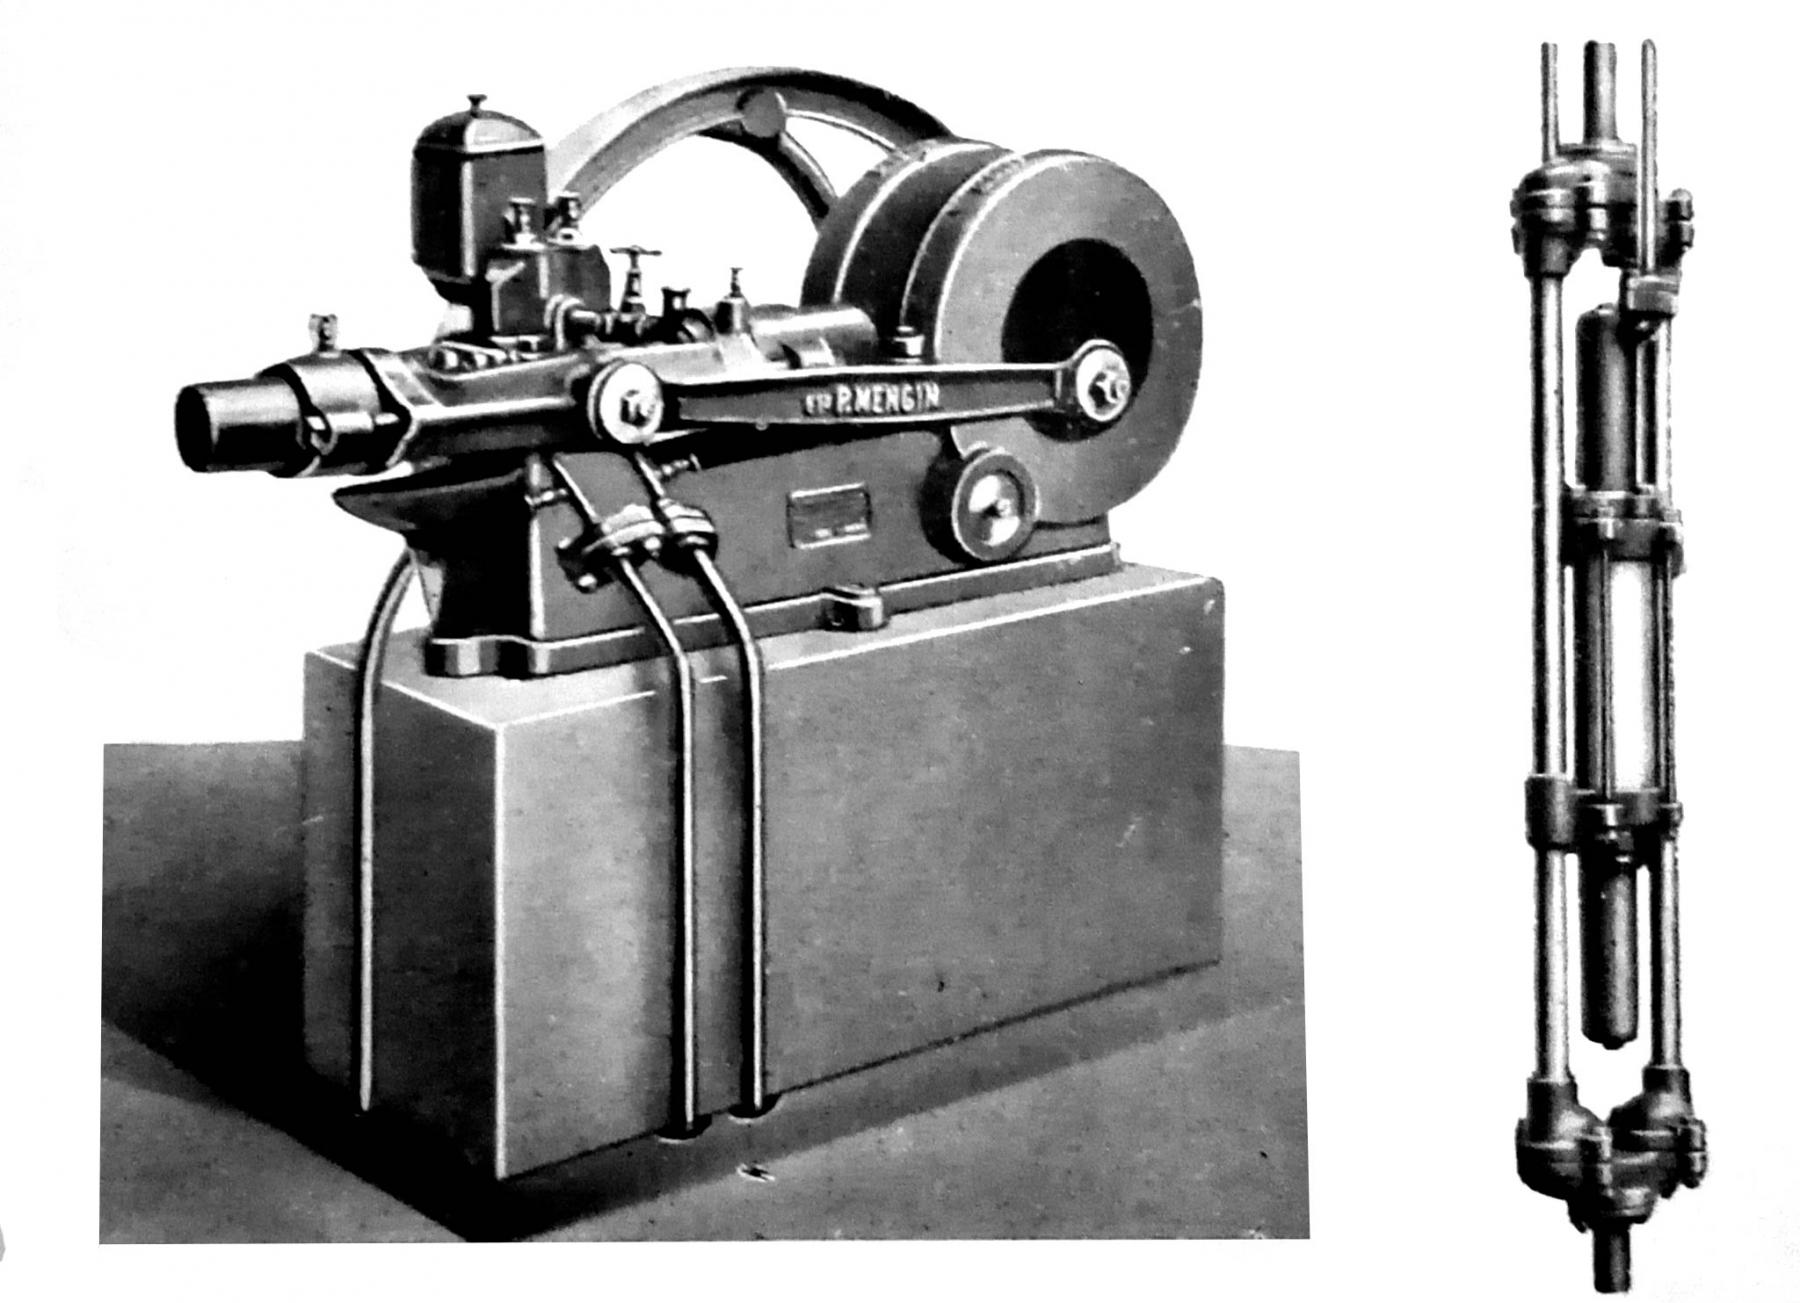 Ligne Maginot - Hydro Pompe Mengin - Presse type B et pompe associée
Extrait de la notice sur ce matériel